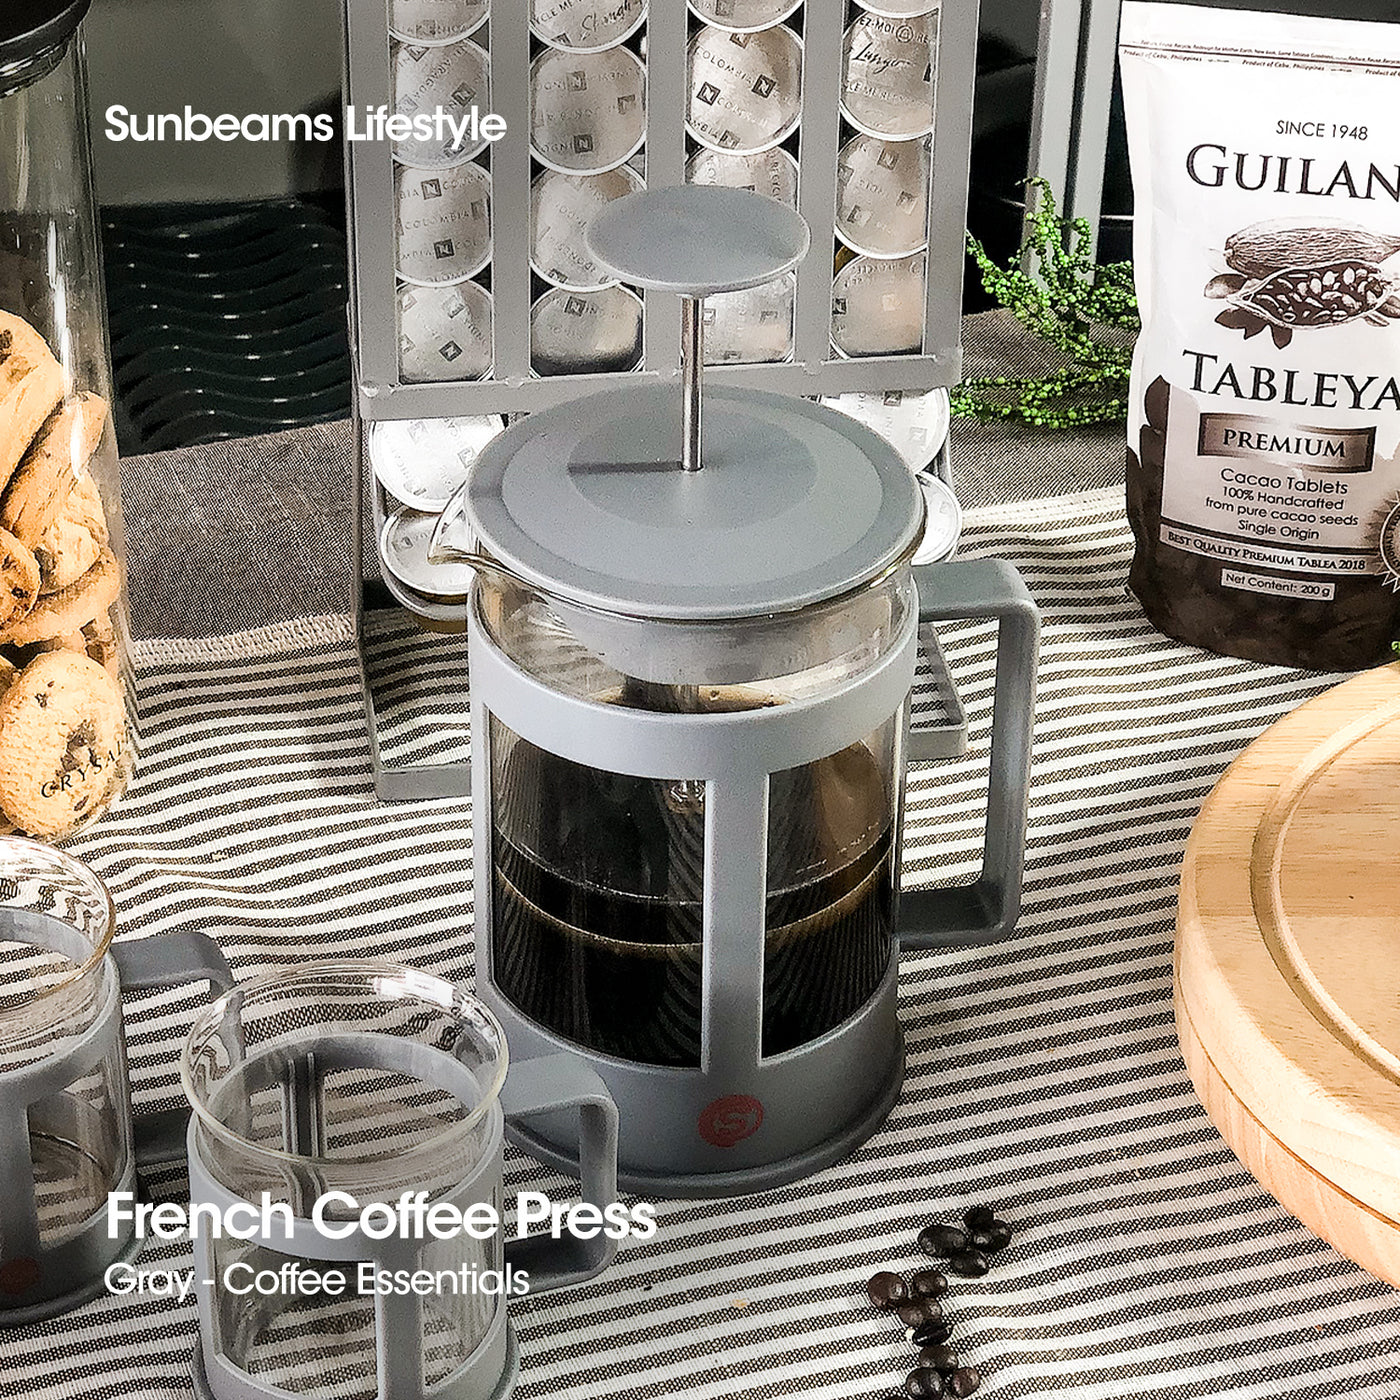 SLIQUE Coffee Press + 2pcs Mug Set